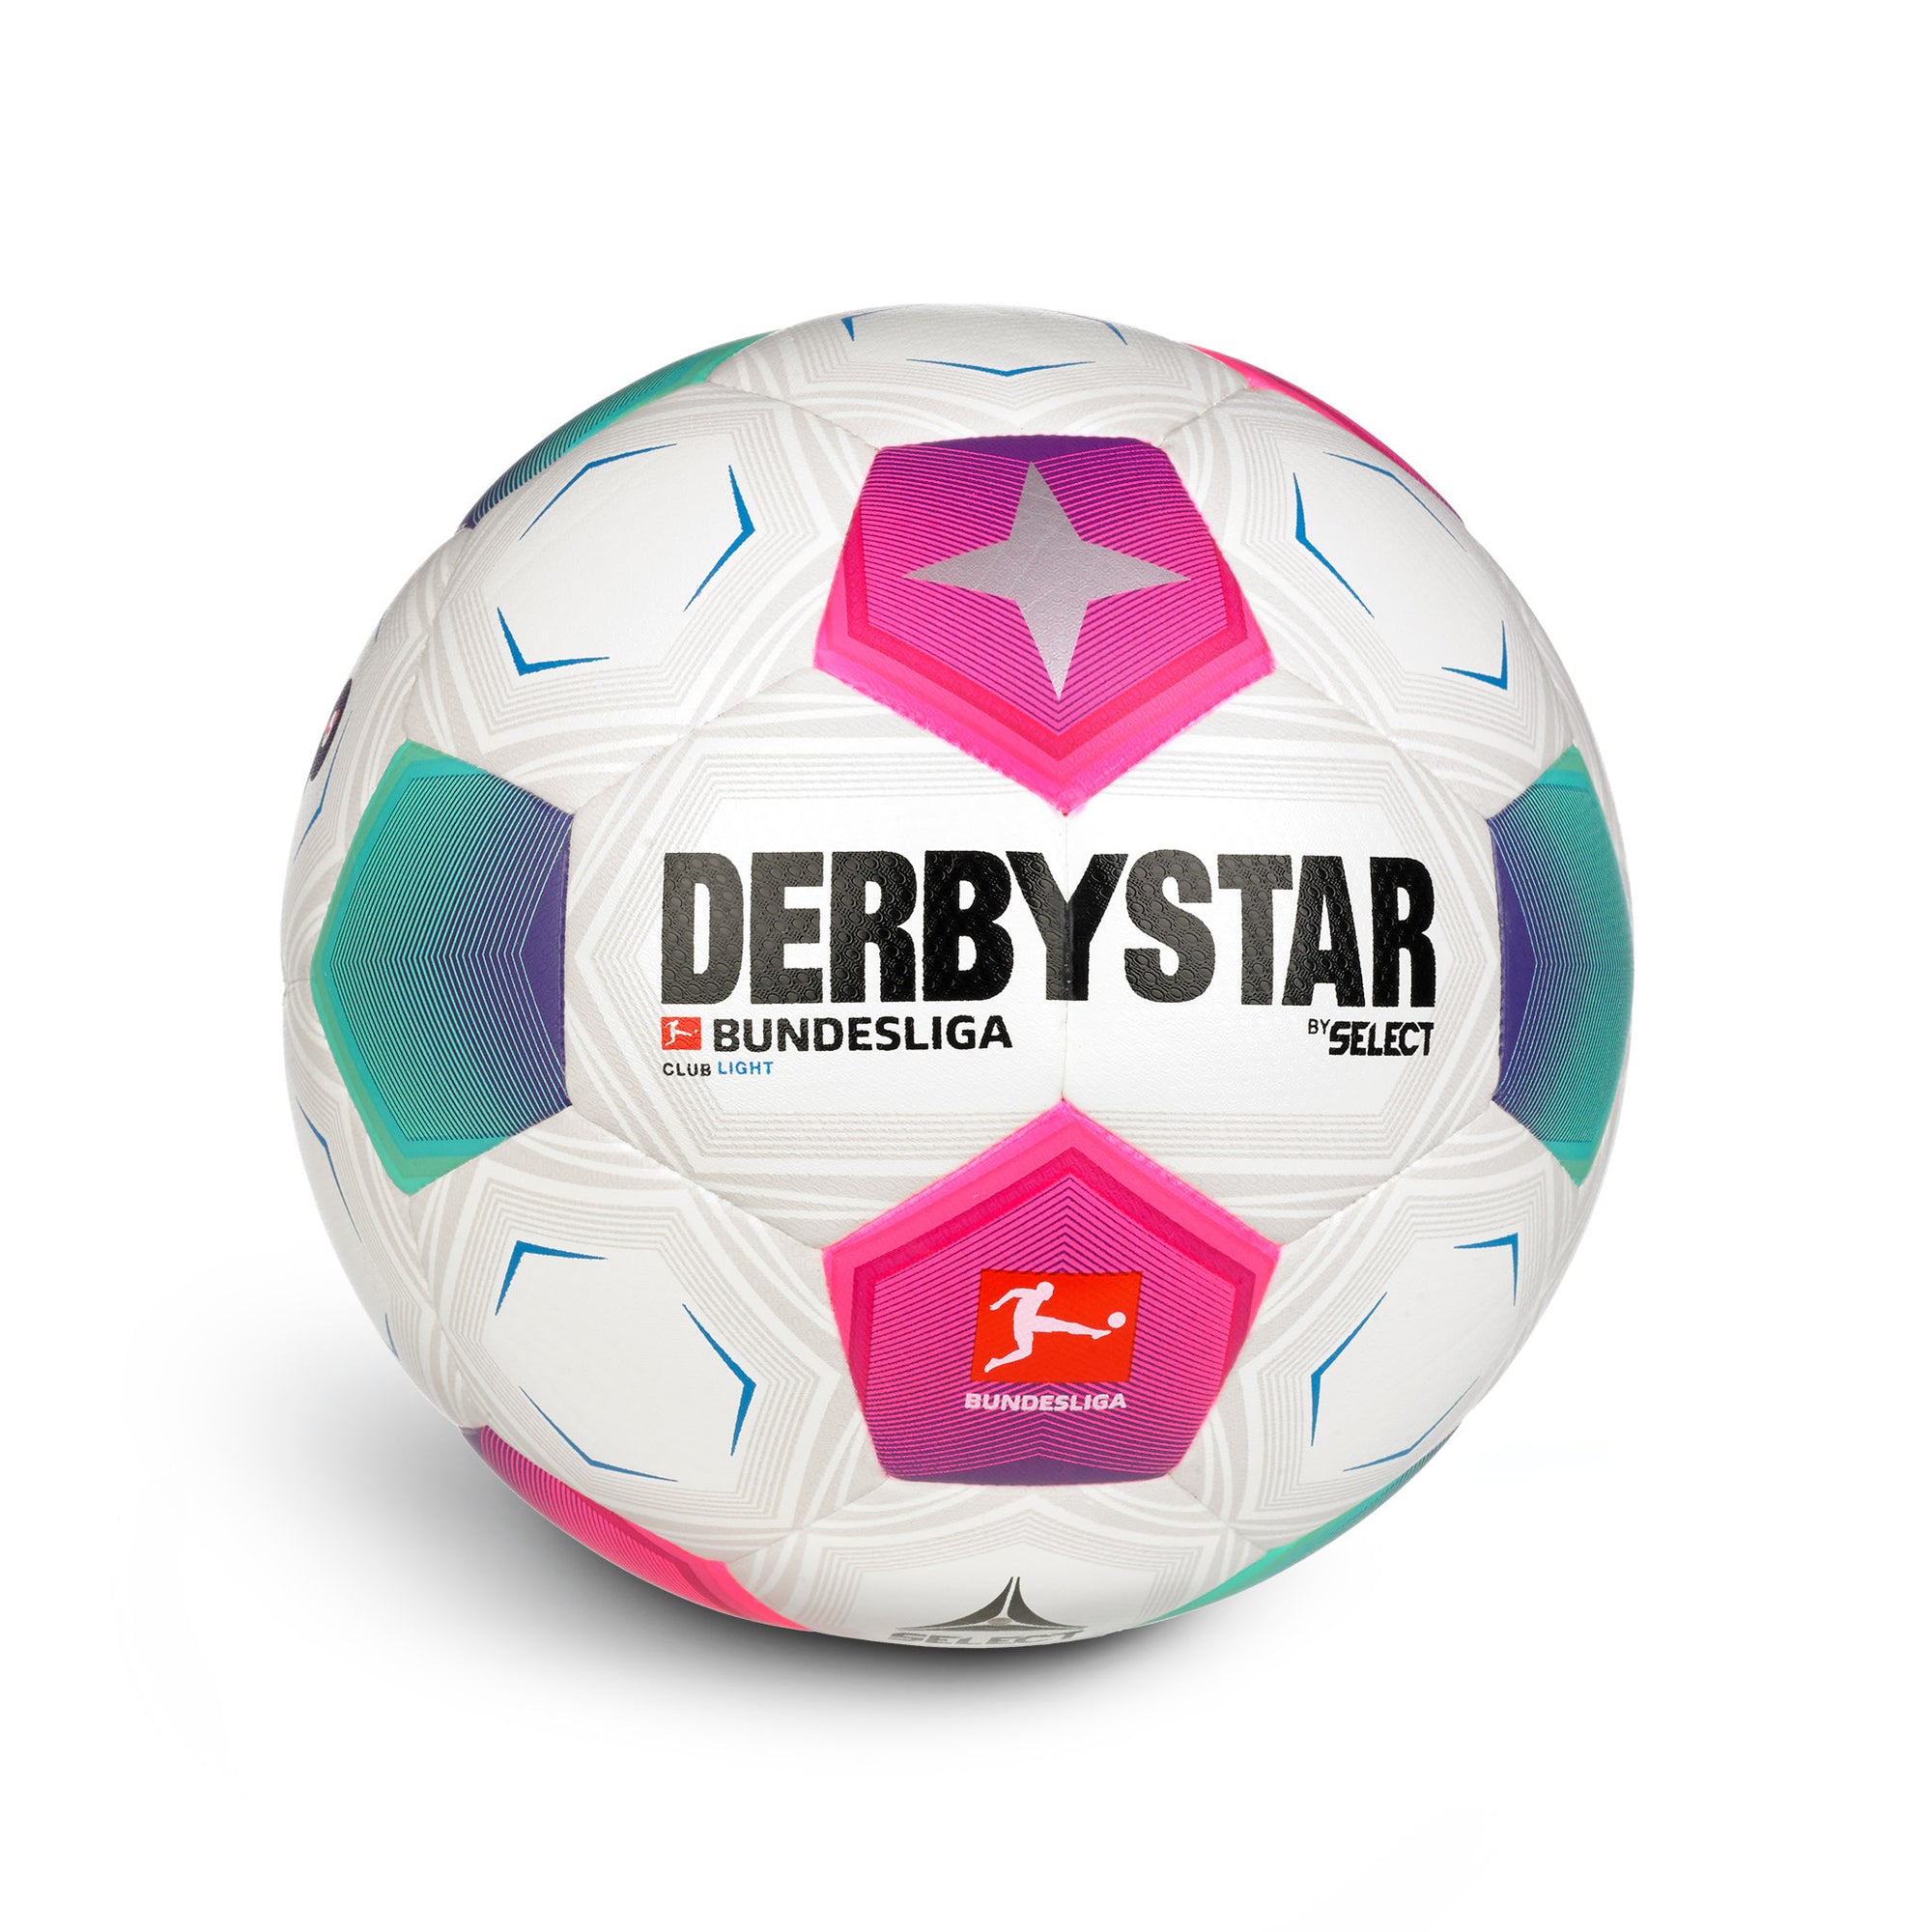 Derbystar Bundesliga Club Light v23 Lightball Weiss